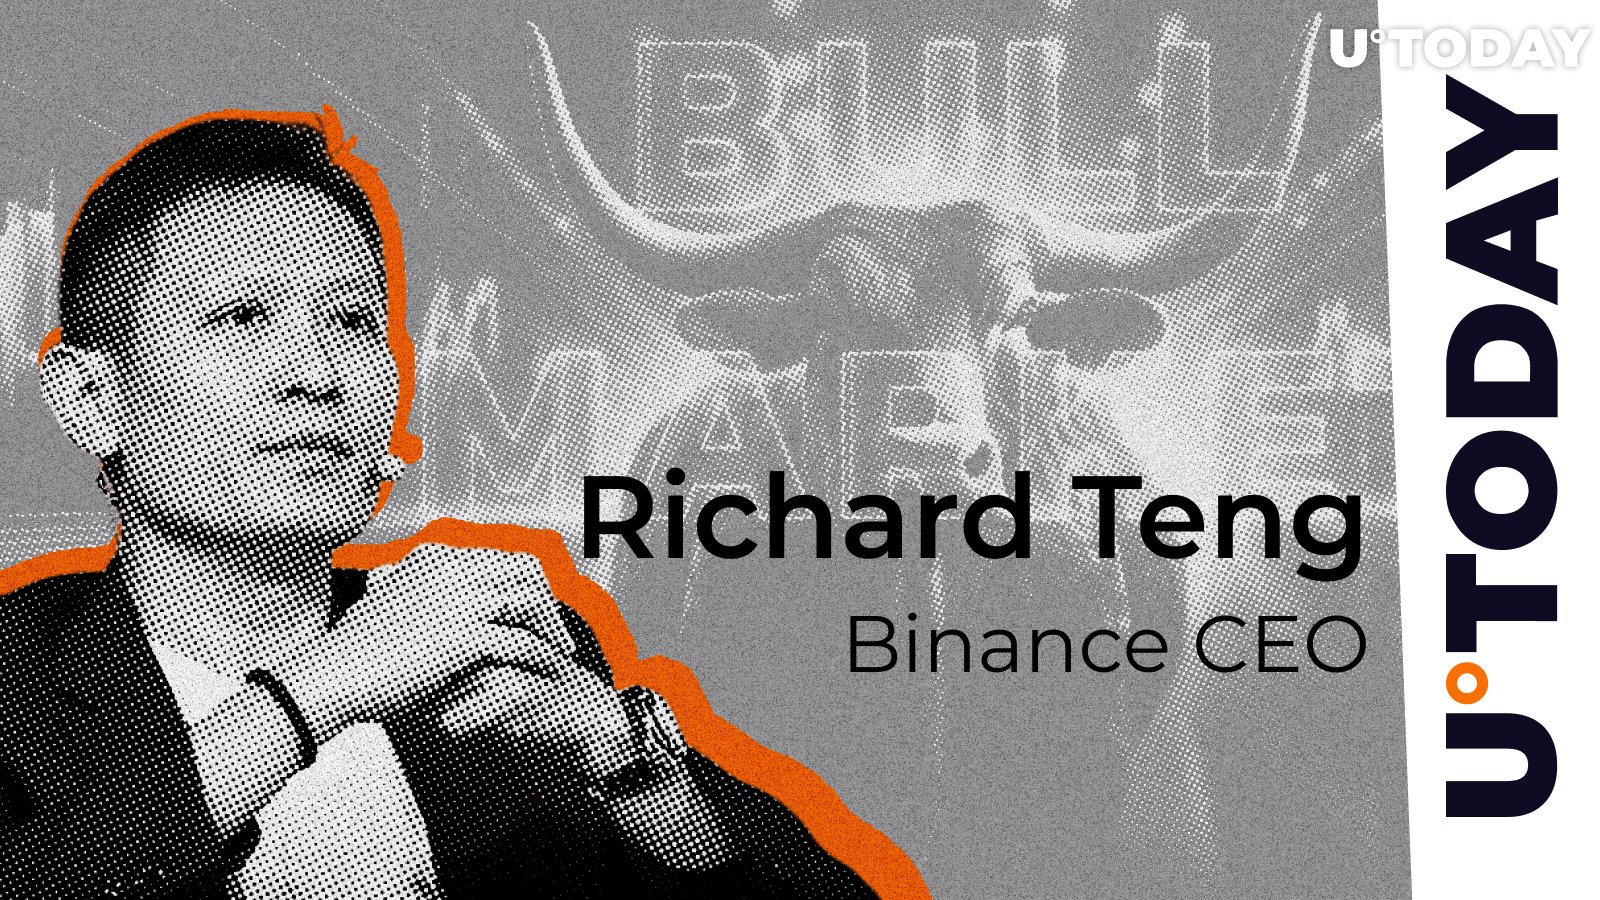 Bull Market Confirmed? Binance CEO Shares Hidden Insight